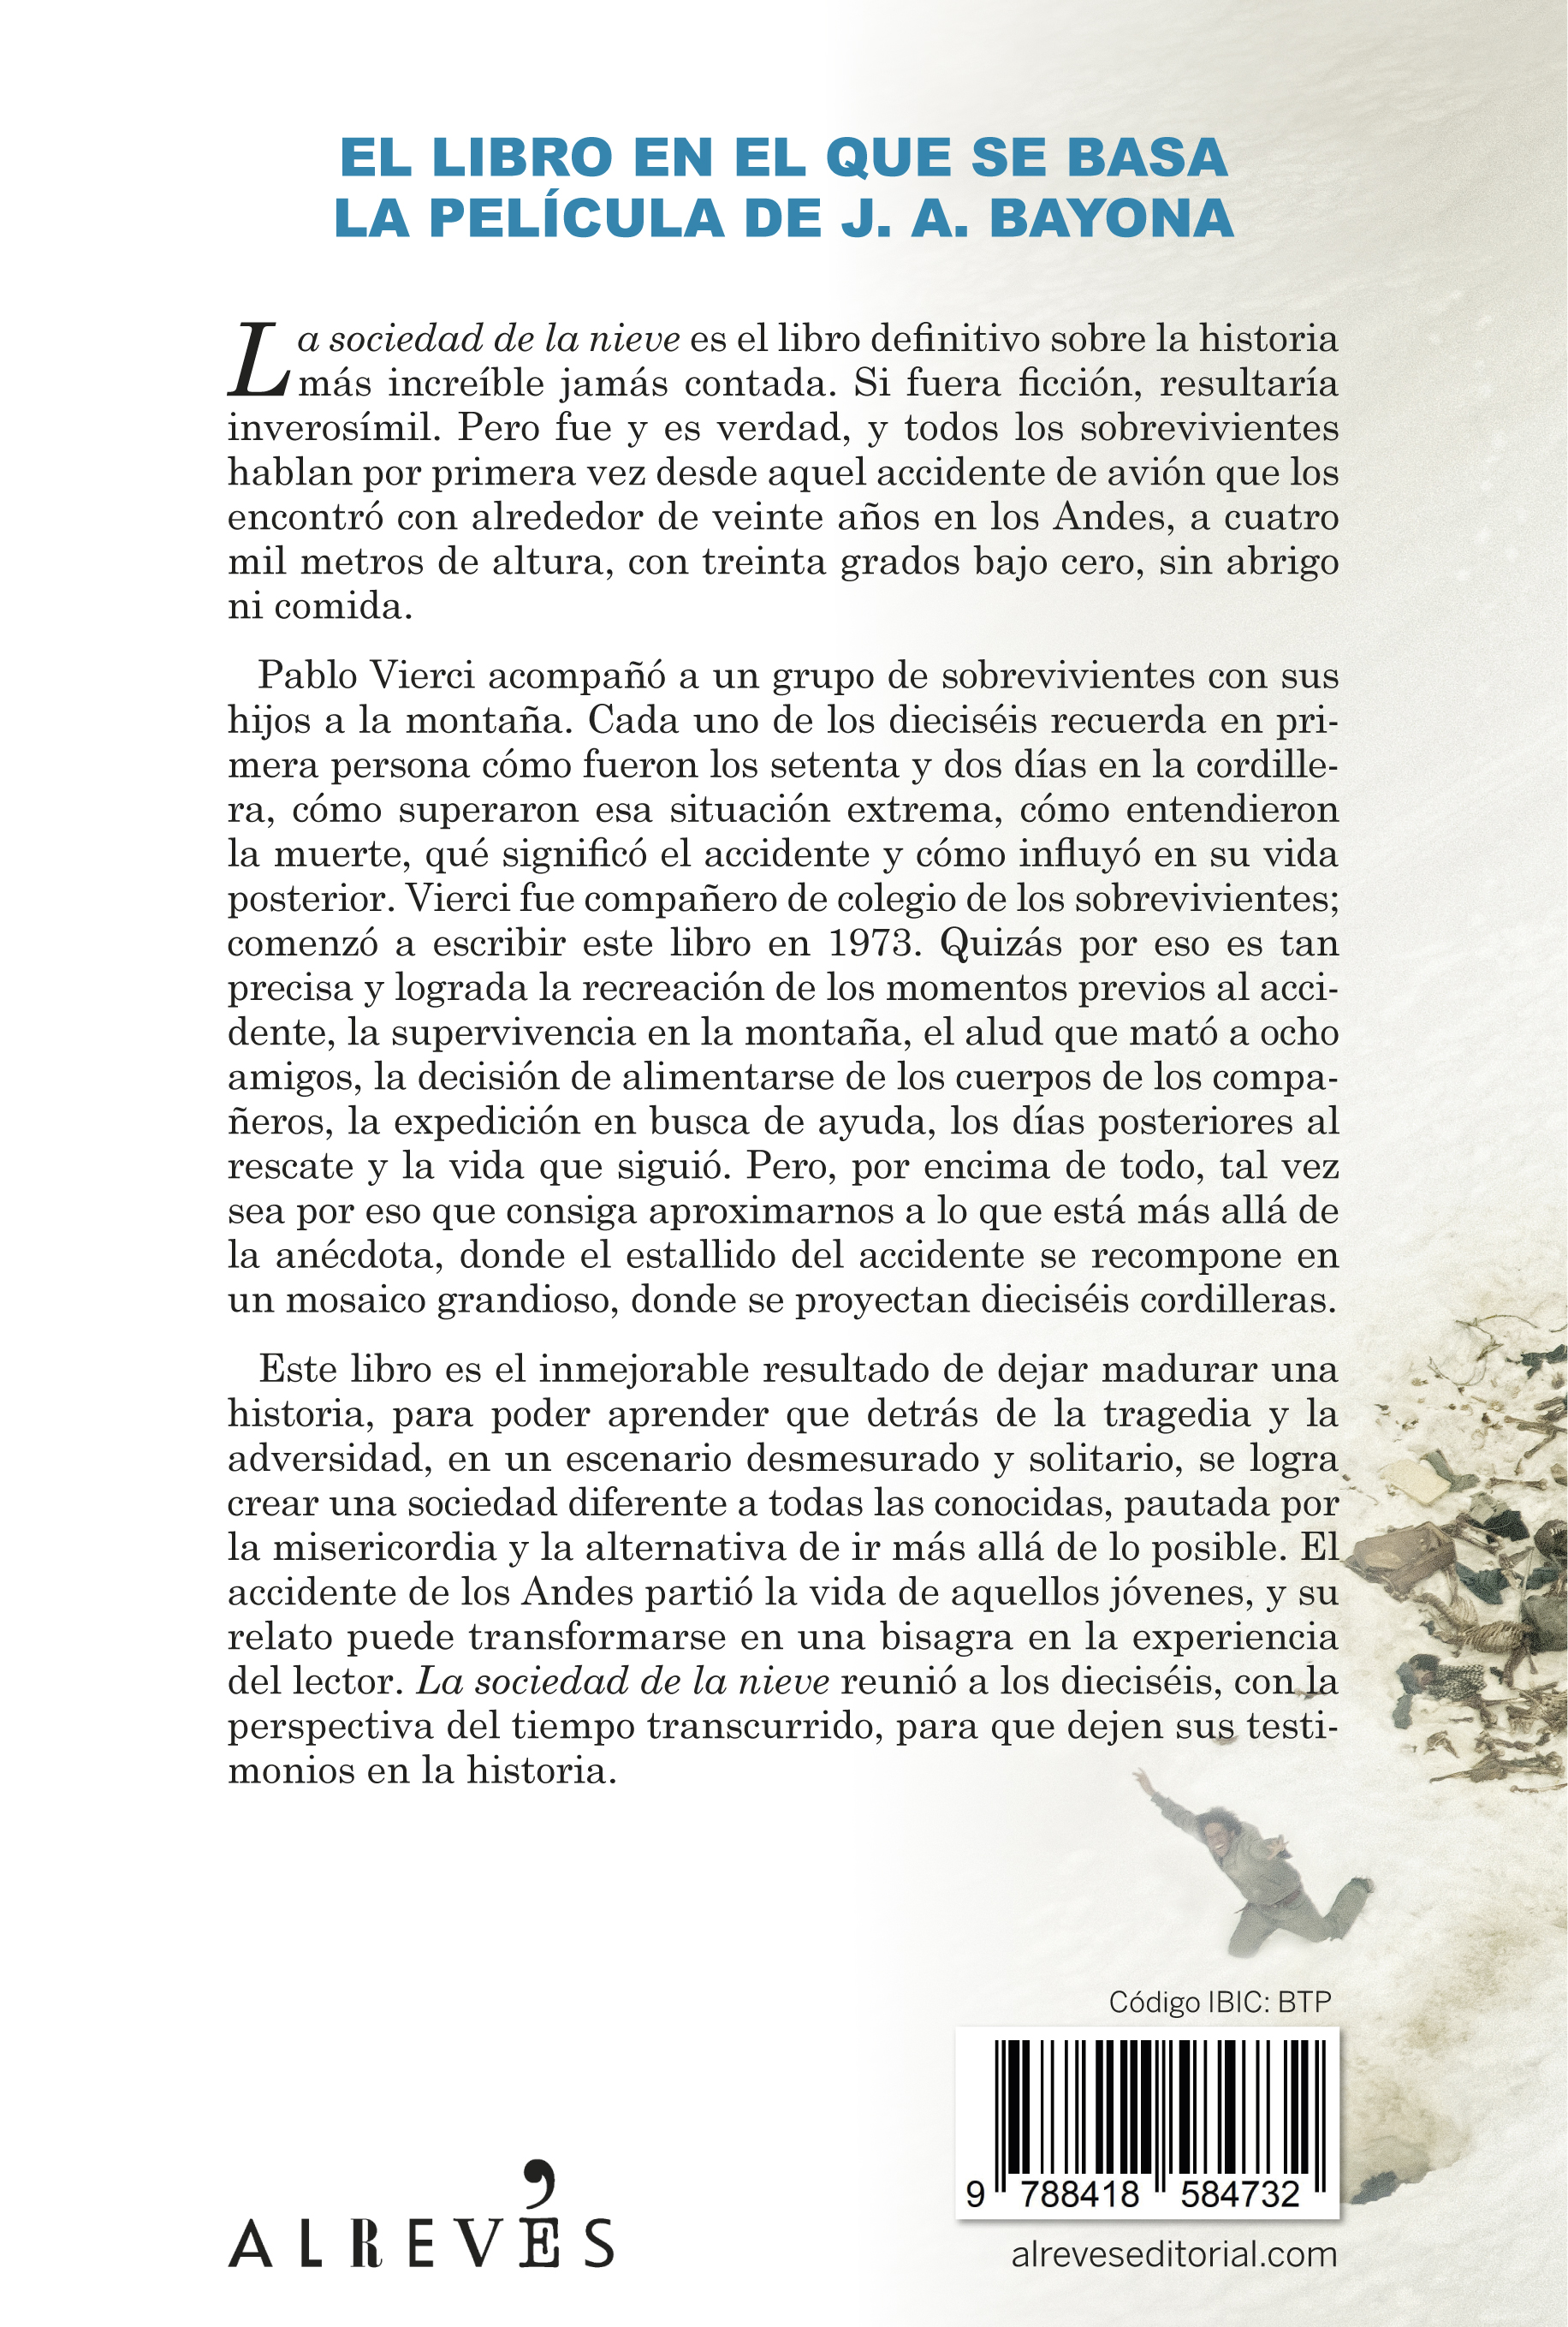 Pablo Vierci, autor de 'La sociedad de la nieve' Pablo Vierci, autor del  libro 'La sociedad de la nieve' que acompañó a Bayona durante el rodaje:  De los dieciséis supervivientes, sólo dos no han vuelto a volar